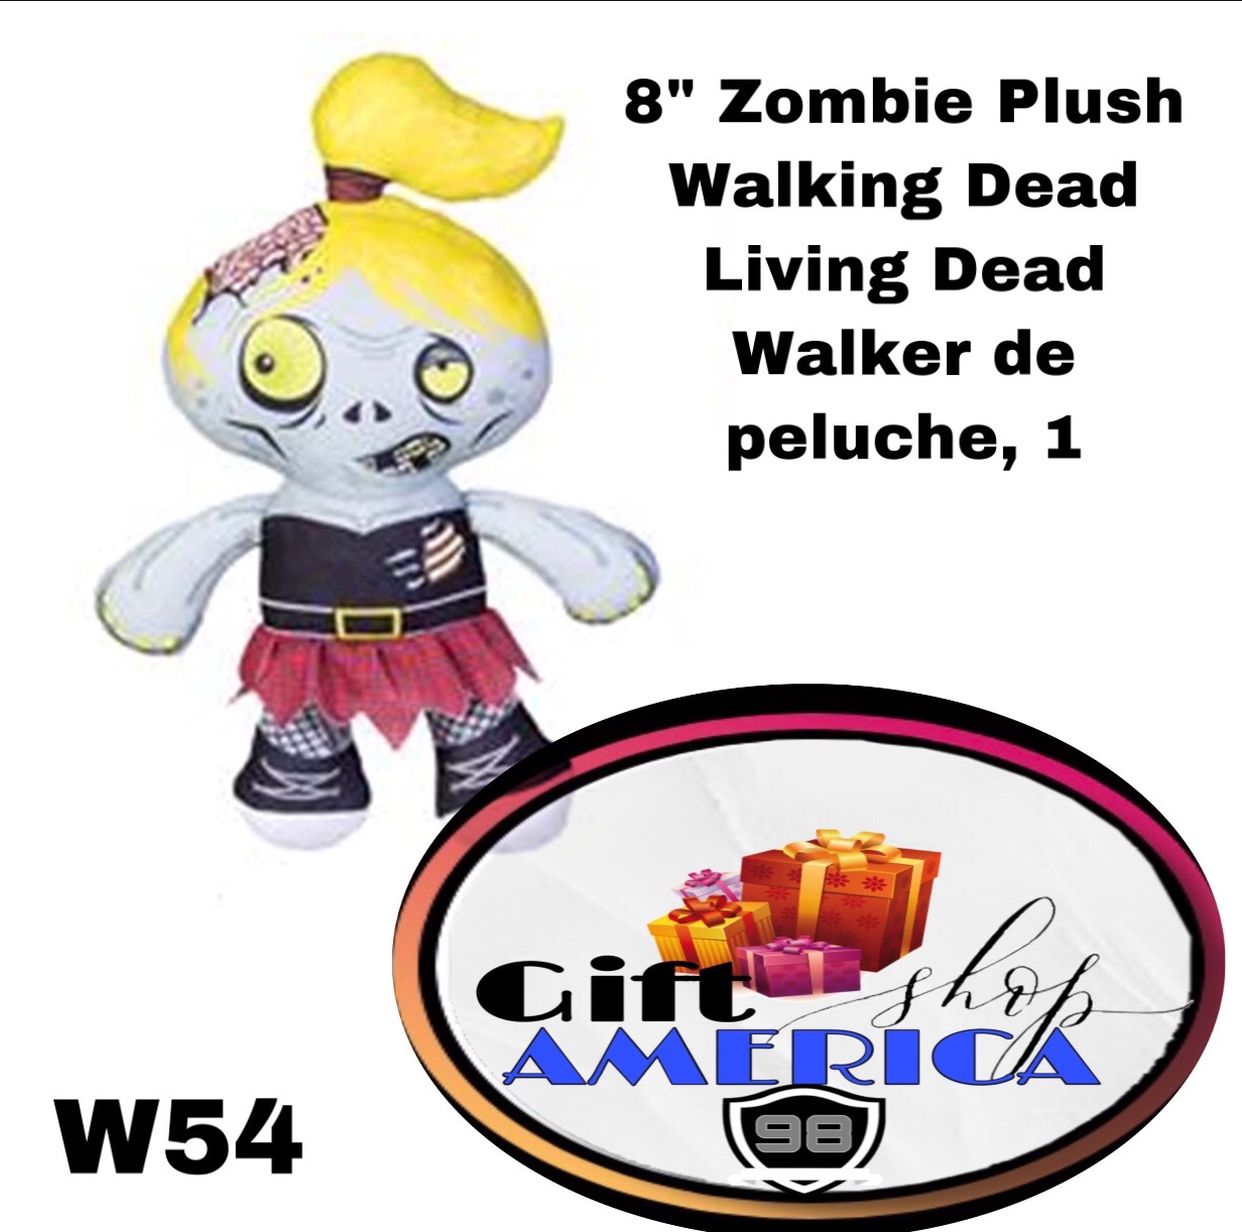 8" Zombie Plush Walking Dead Living Dead Walker de peluche, 1 W54